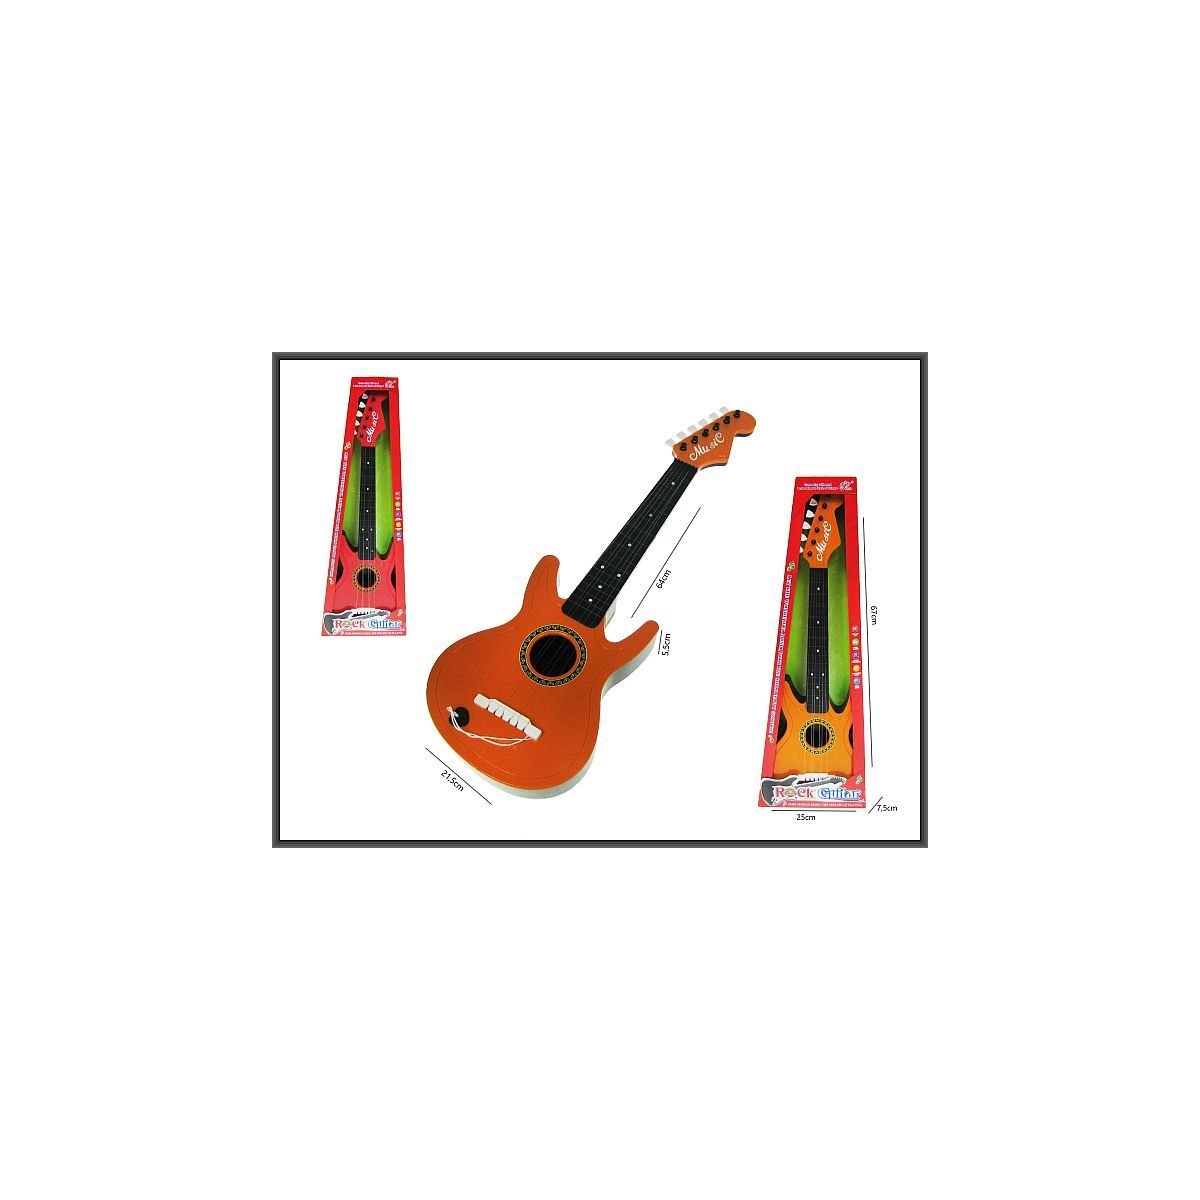 Gitara 65cm 3-kolory Hipo (H12460)